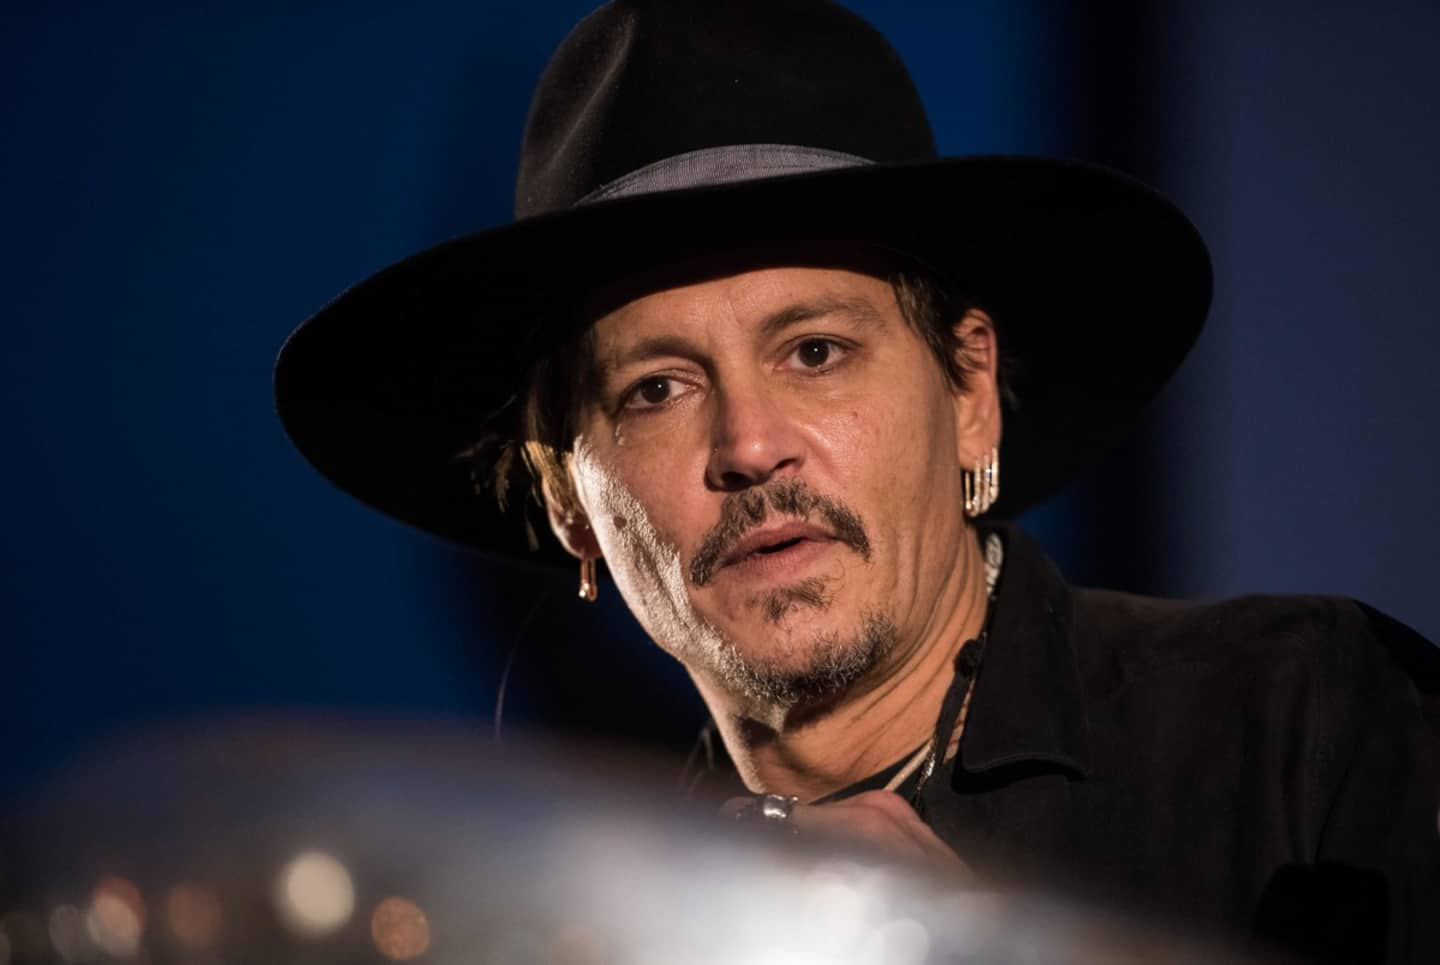 Johnny Depp sells artwork he made for over 3 million euros